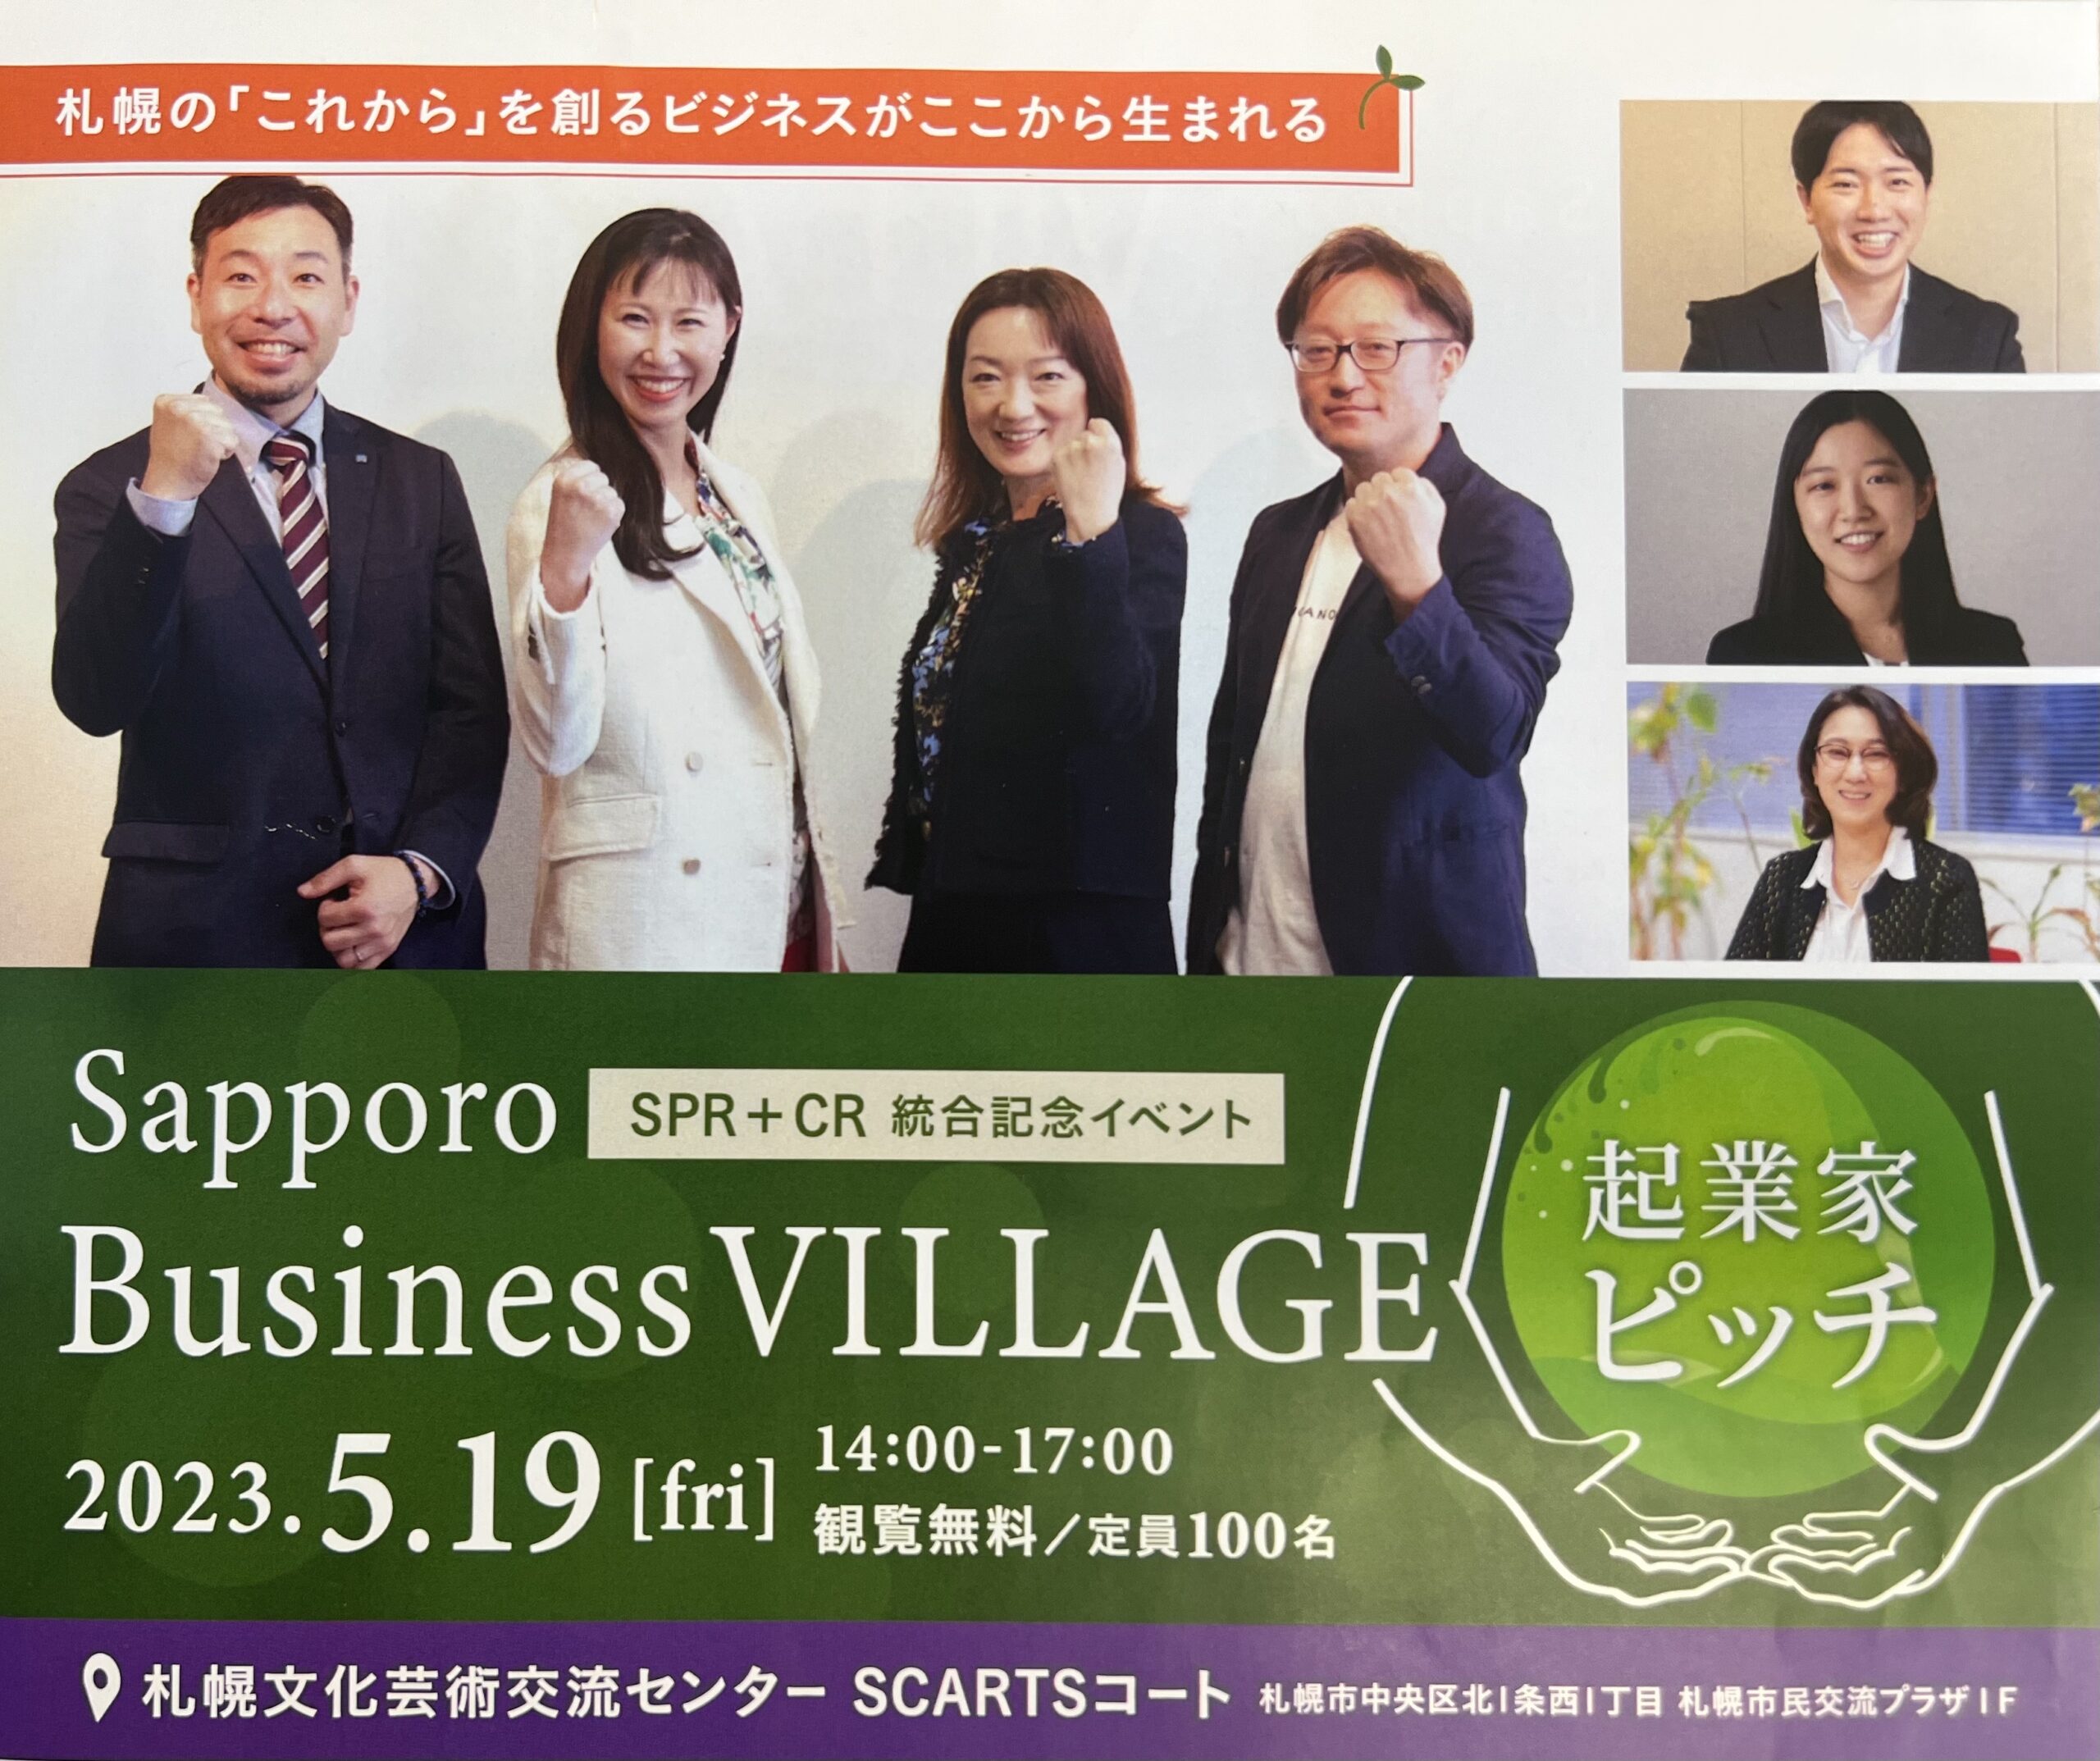 「Sapporo Business VILLAGE 起業家ピッチ」イベント登壇します